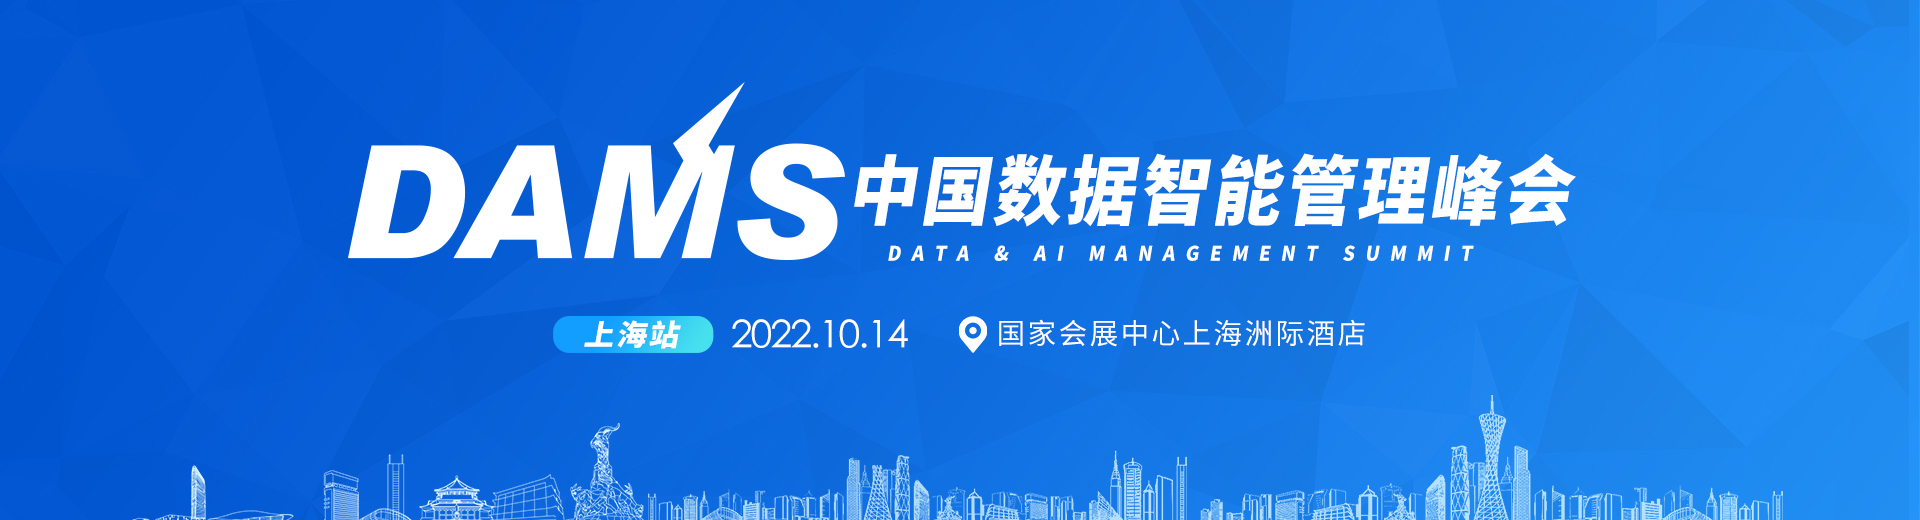 2022年DAMS中国数据智能管理峰会-上海站